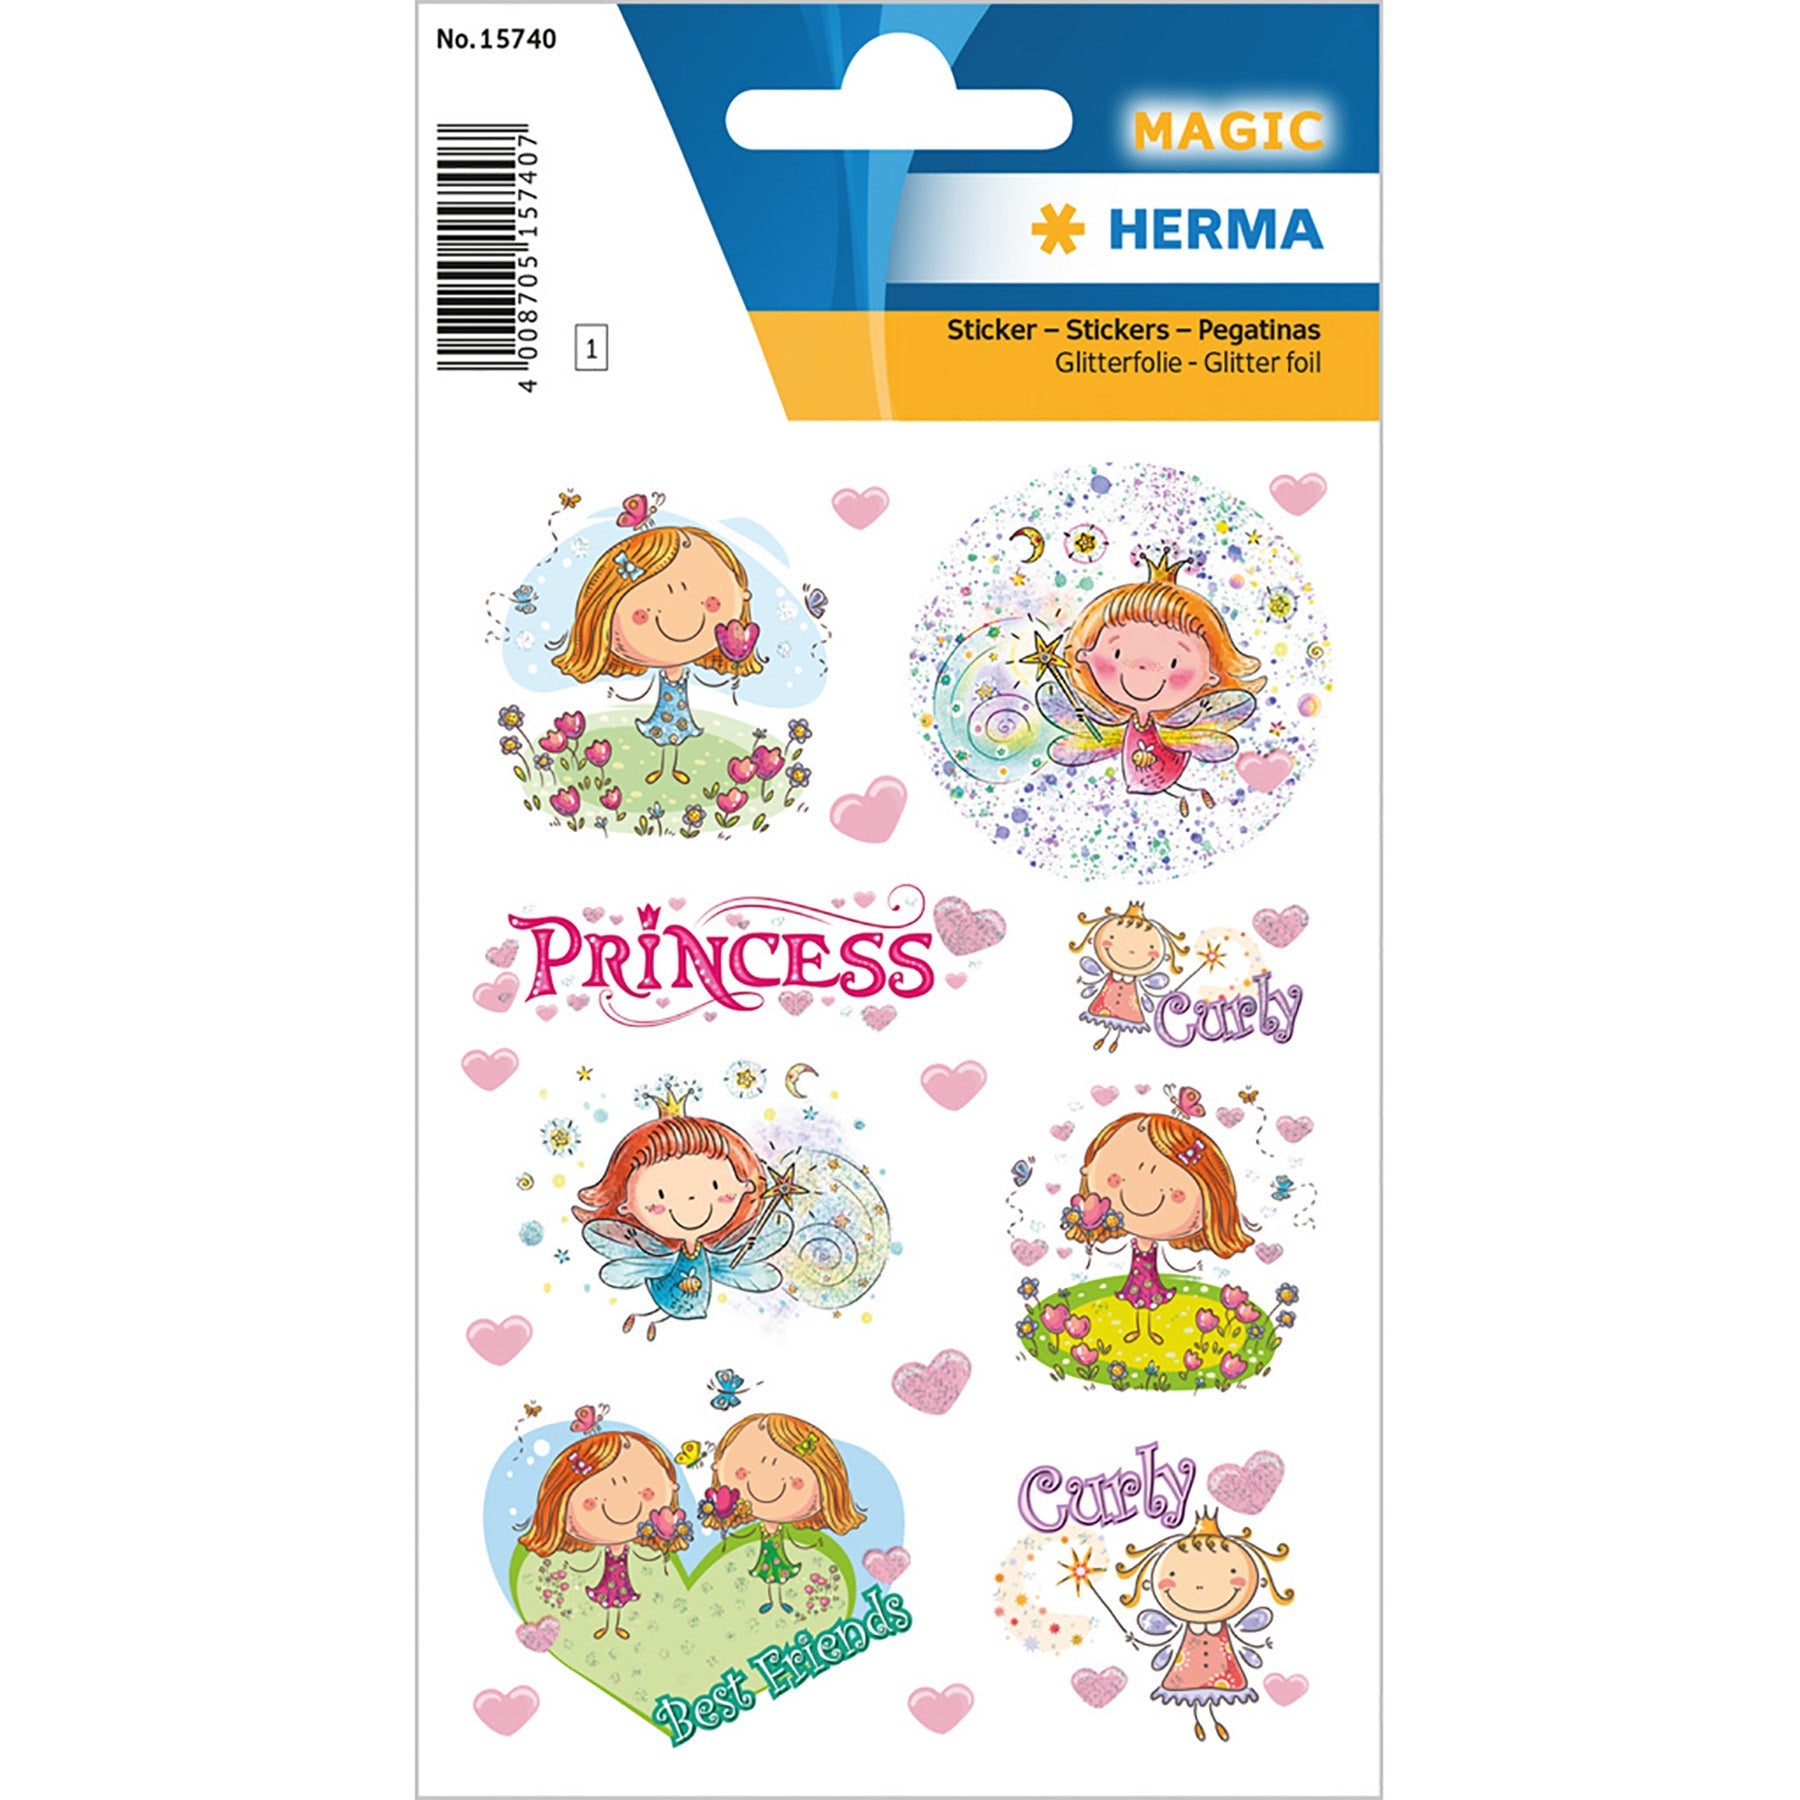 Herma Magic Stickers Princess Curly Glitter Foil 4.75x3.1in Sheet